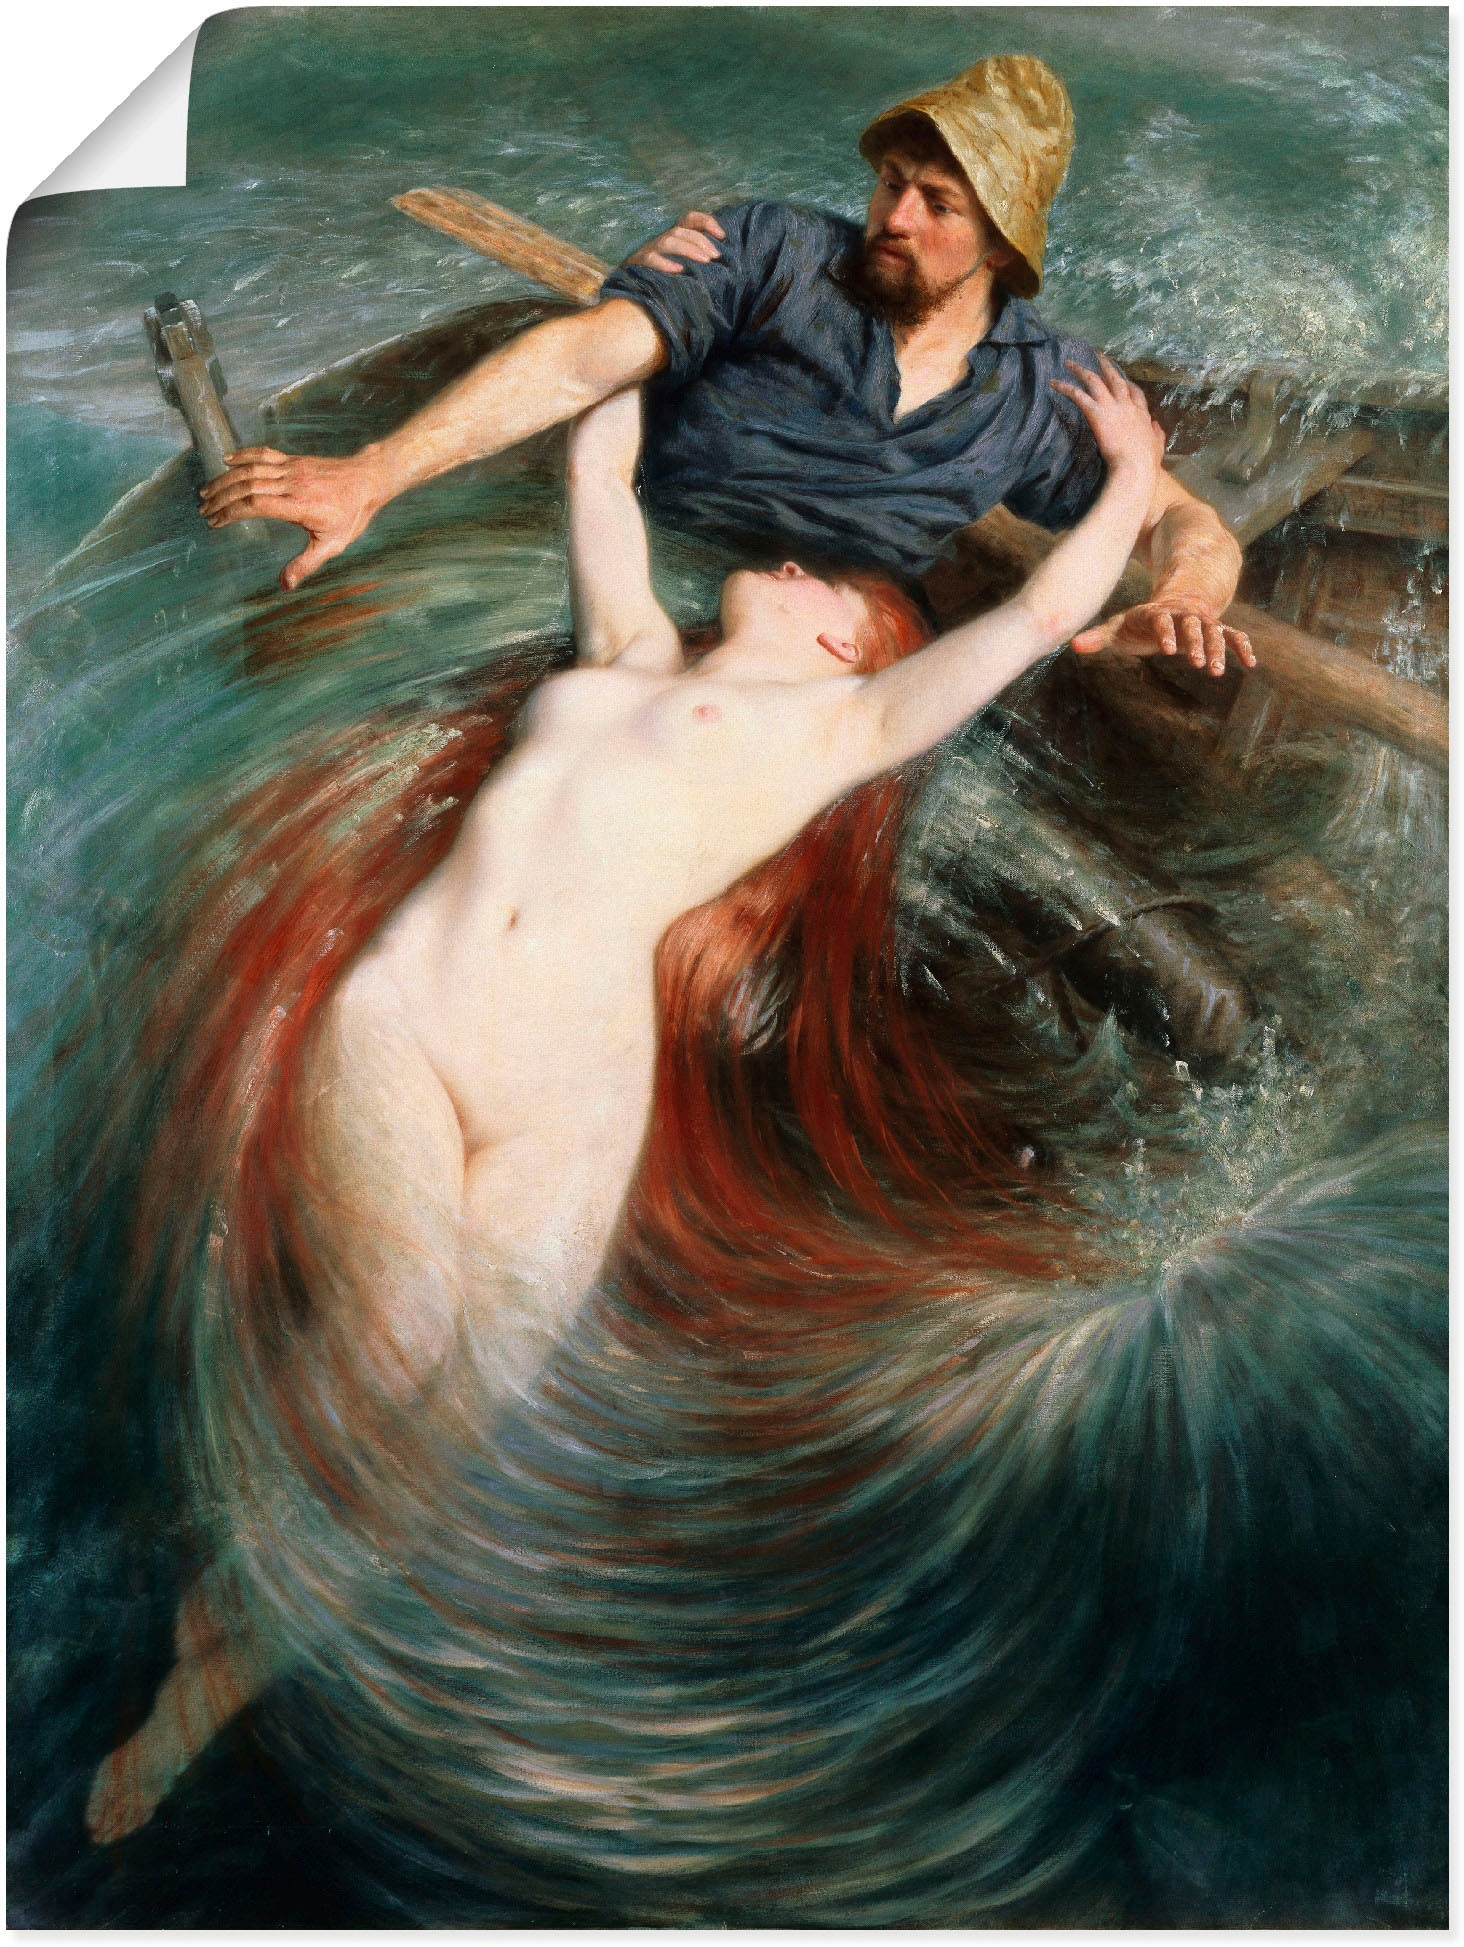 Artland Wandbild »Ein Fischer in den Fängen einer Sirene.«, klassische Fantasie, (1 St.), als Leinwandbild, Poster in verschied. Größen